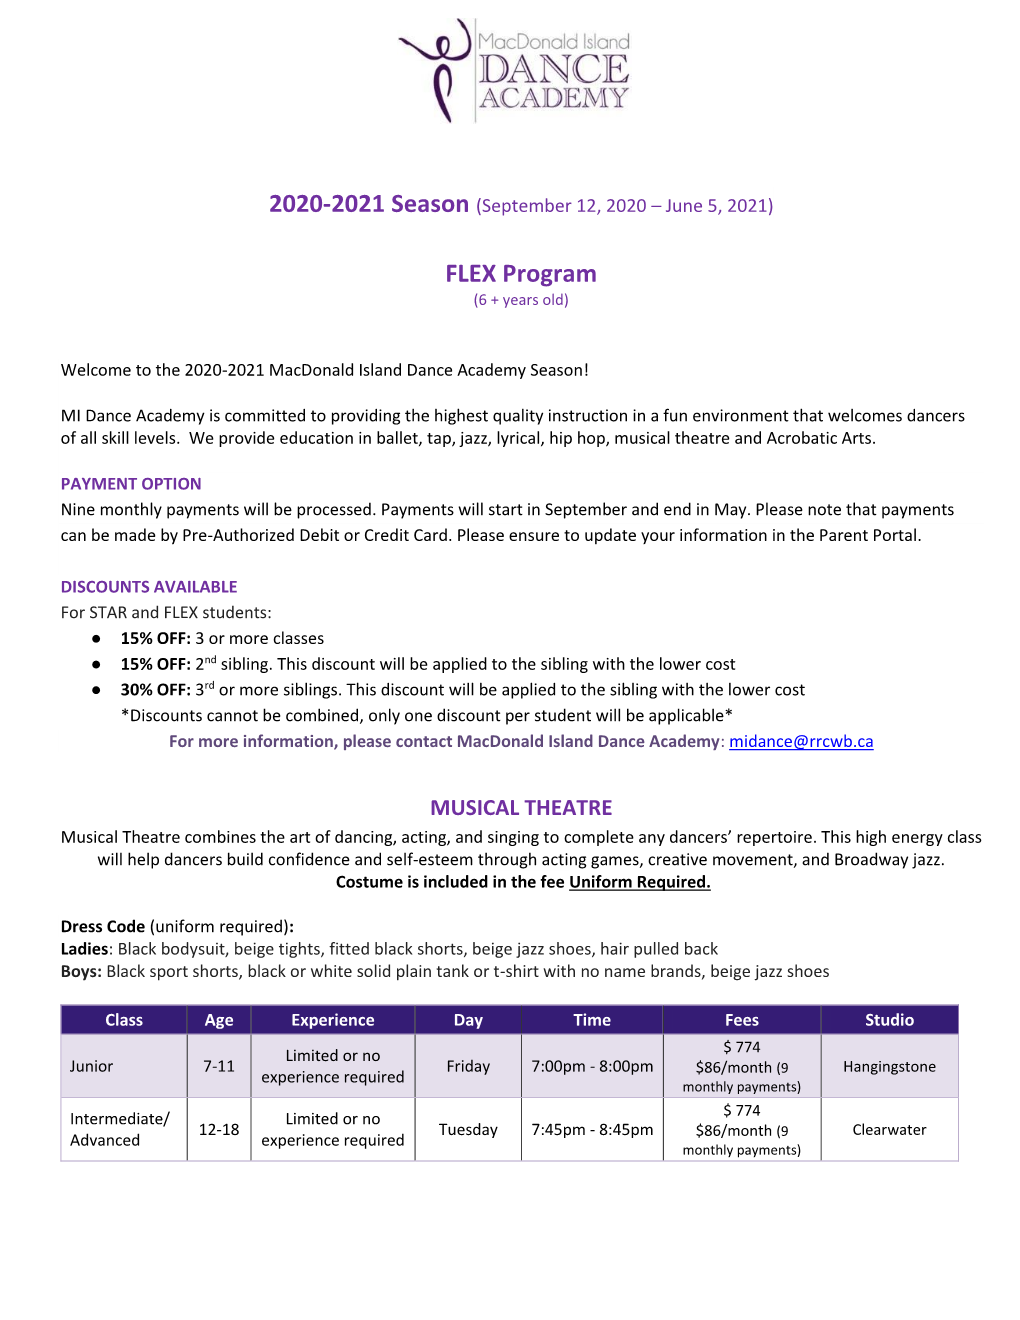 (September 12, 2020 – June 5, 2021) FLEX Program